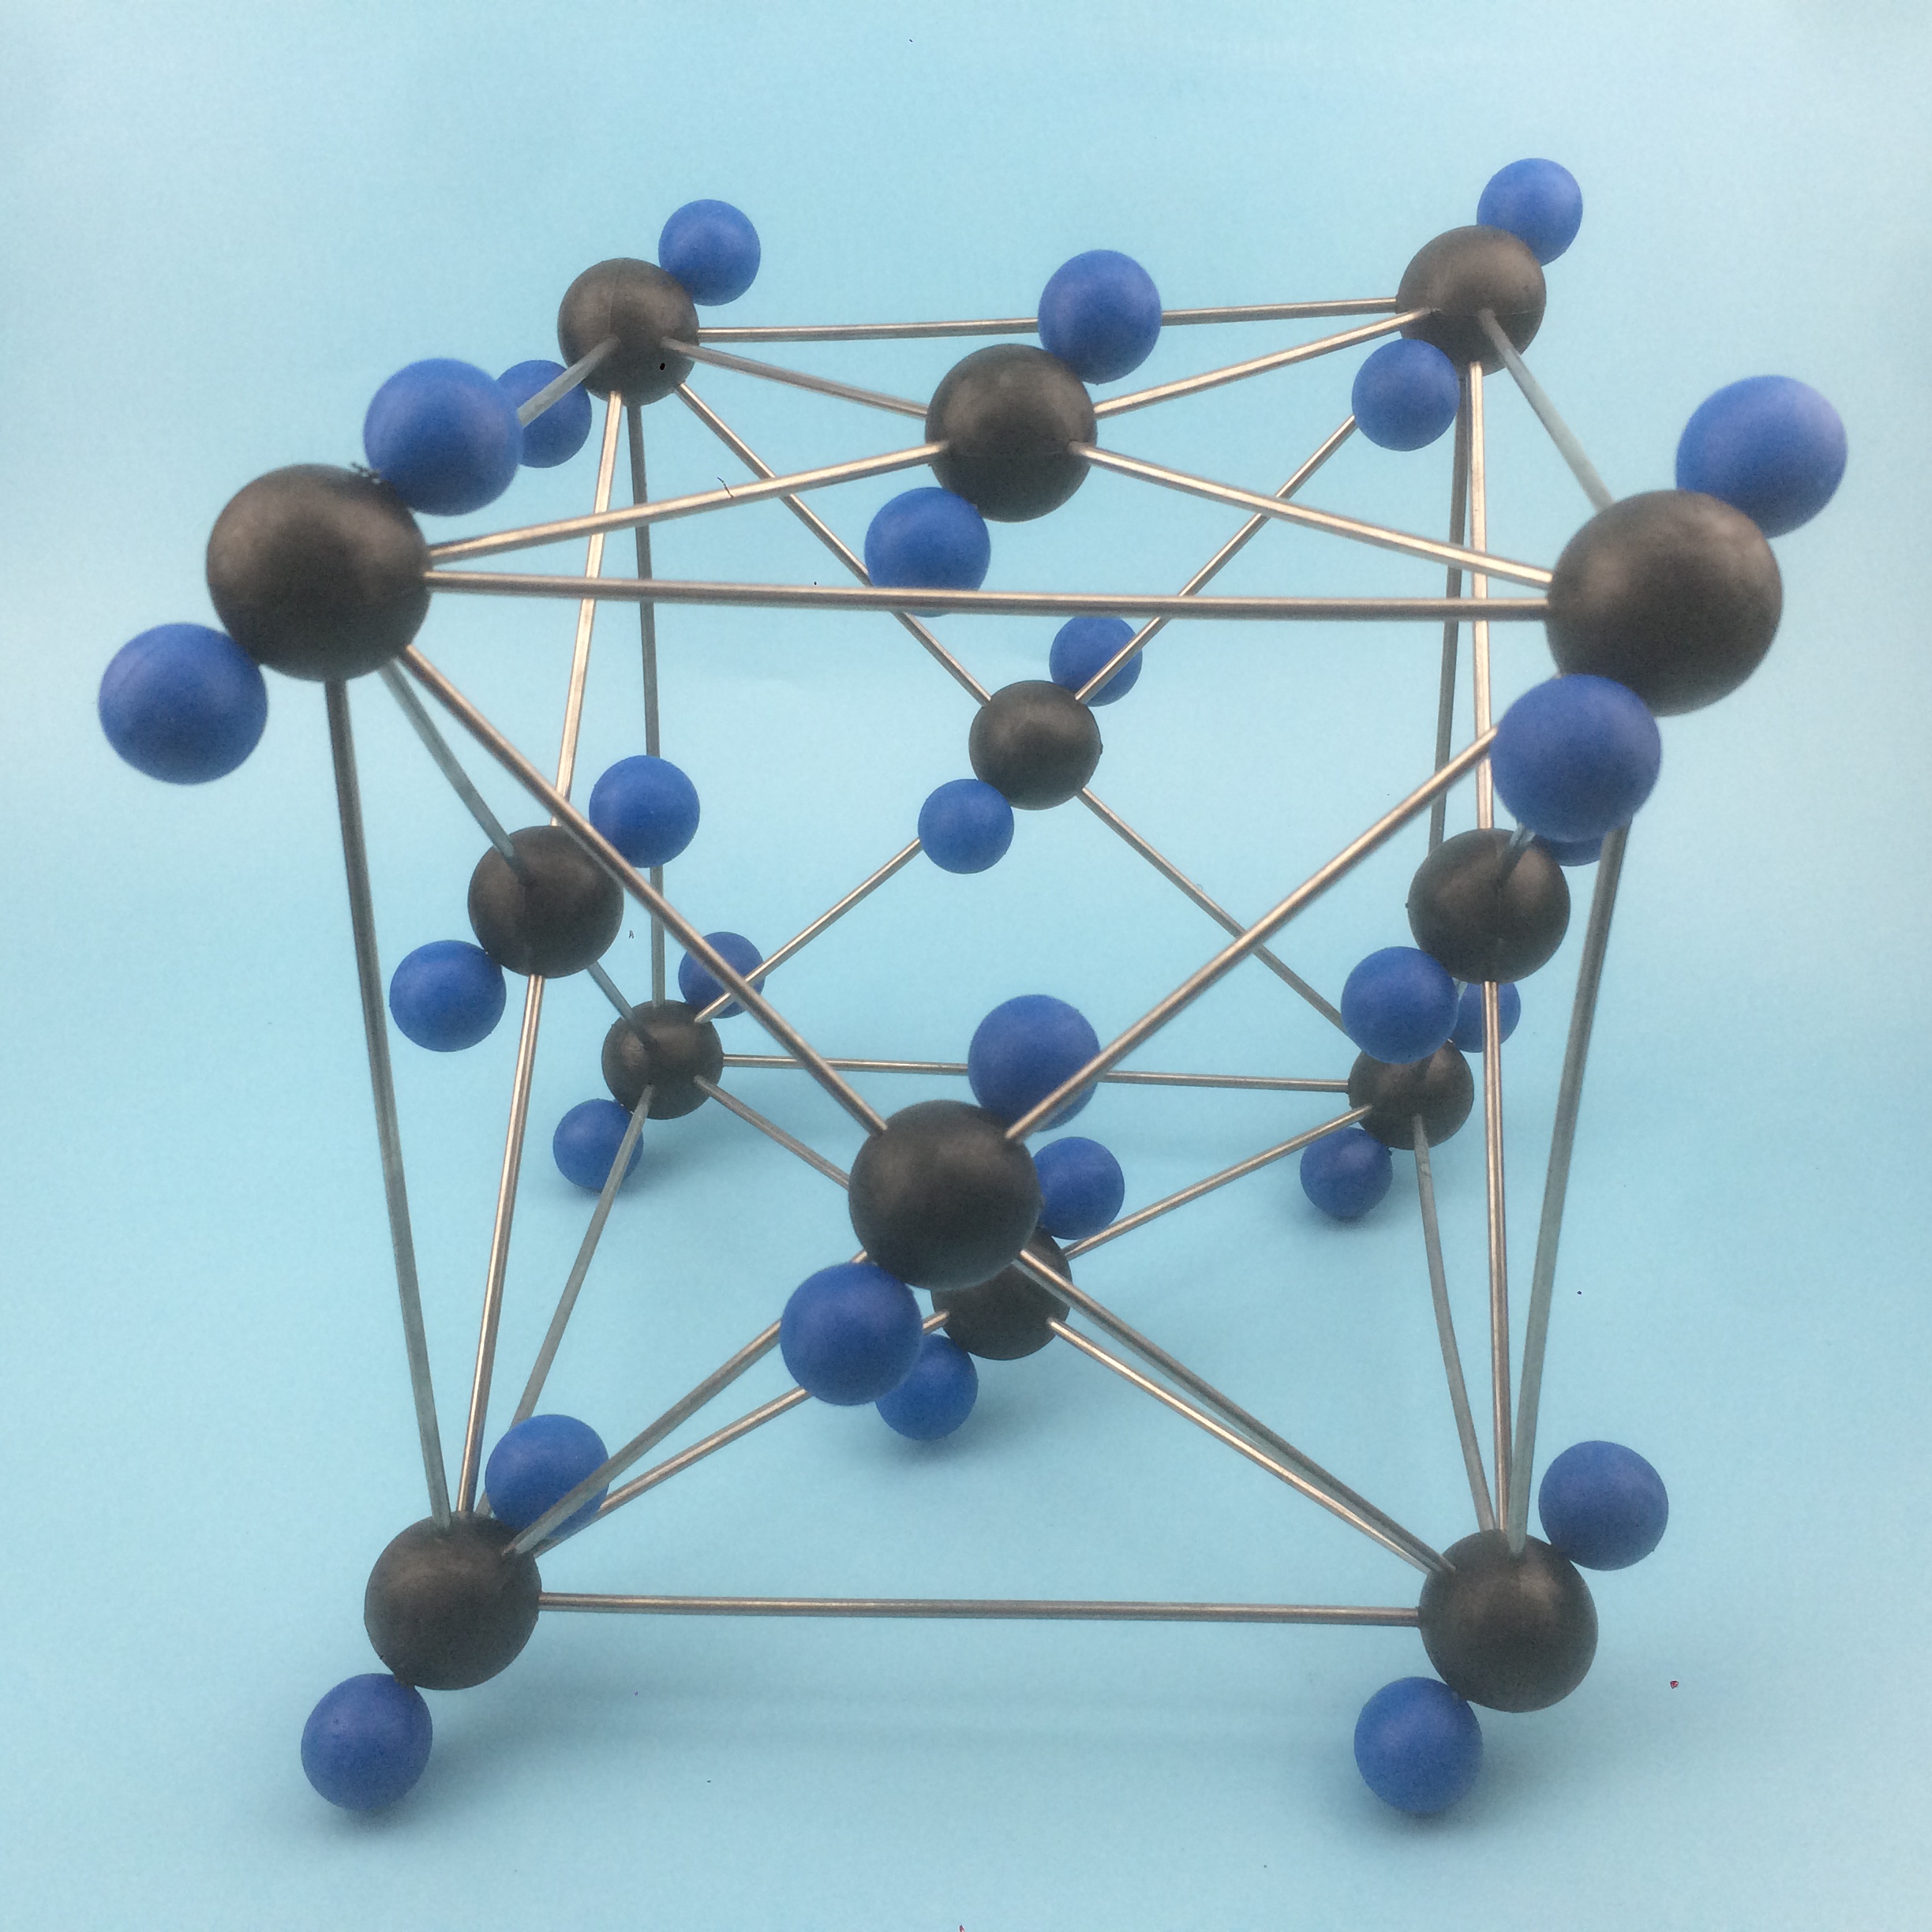 二氧化碳晶体结构模型32013 分子结构模型化学模型物理仪器教学